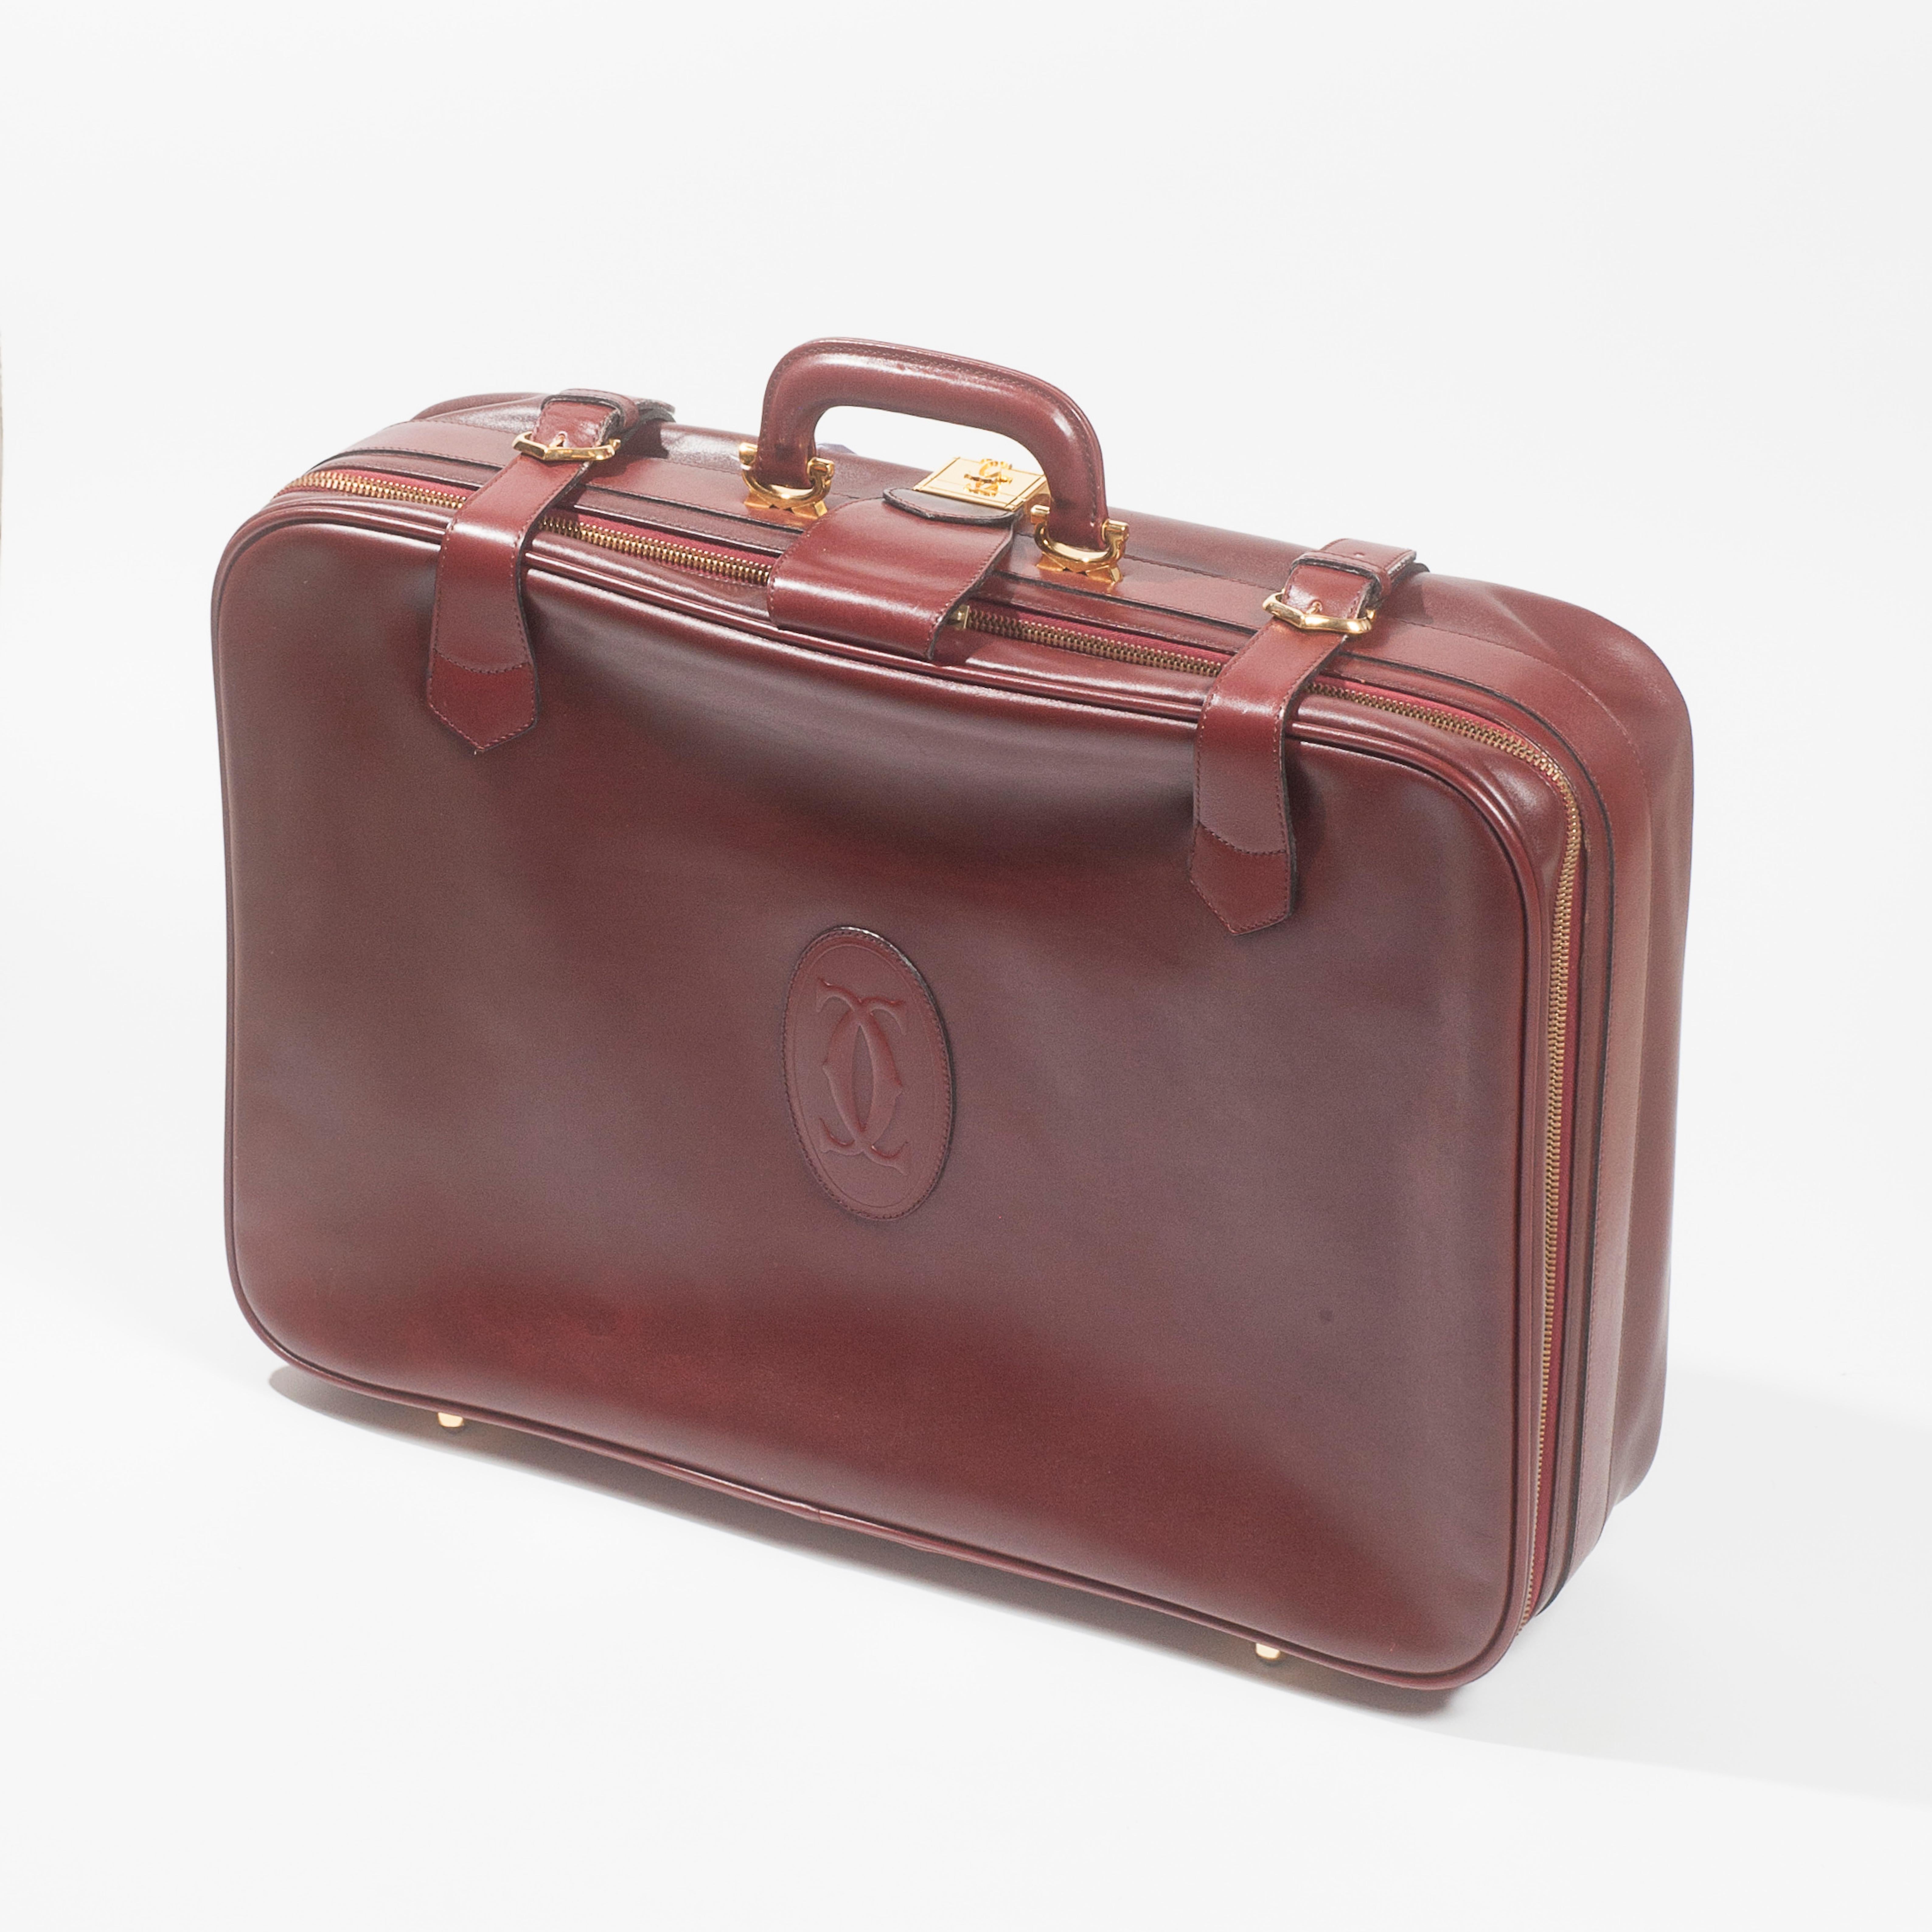 Les Must de Cartier Vintage Leather Suitcase Burgundy Bordeaux Luggage For Sale 5